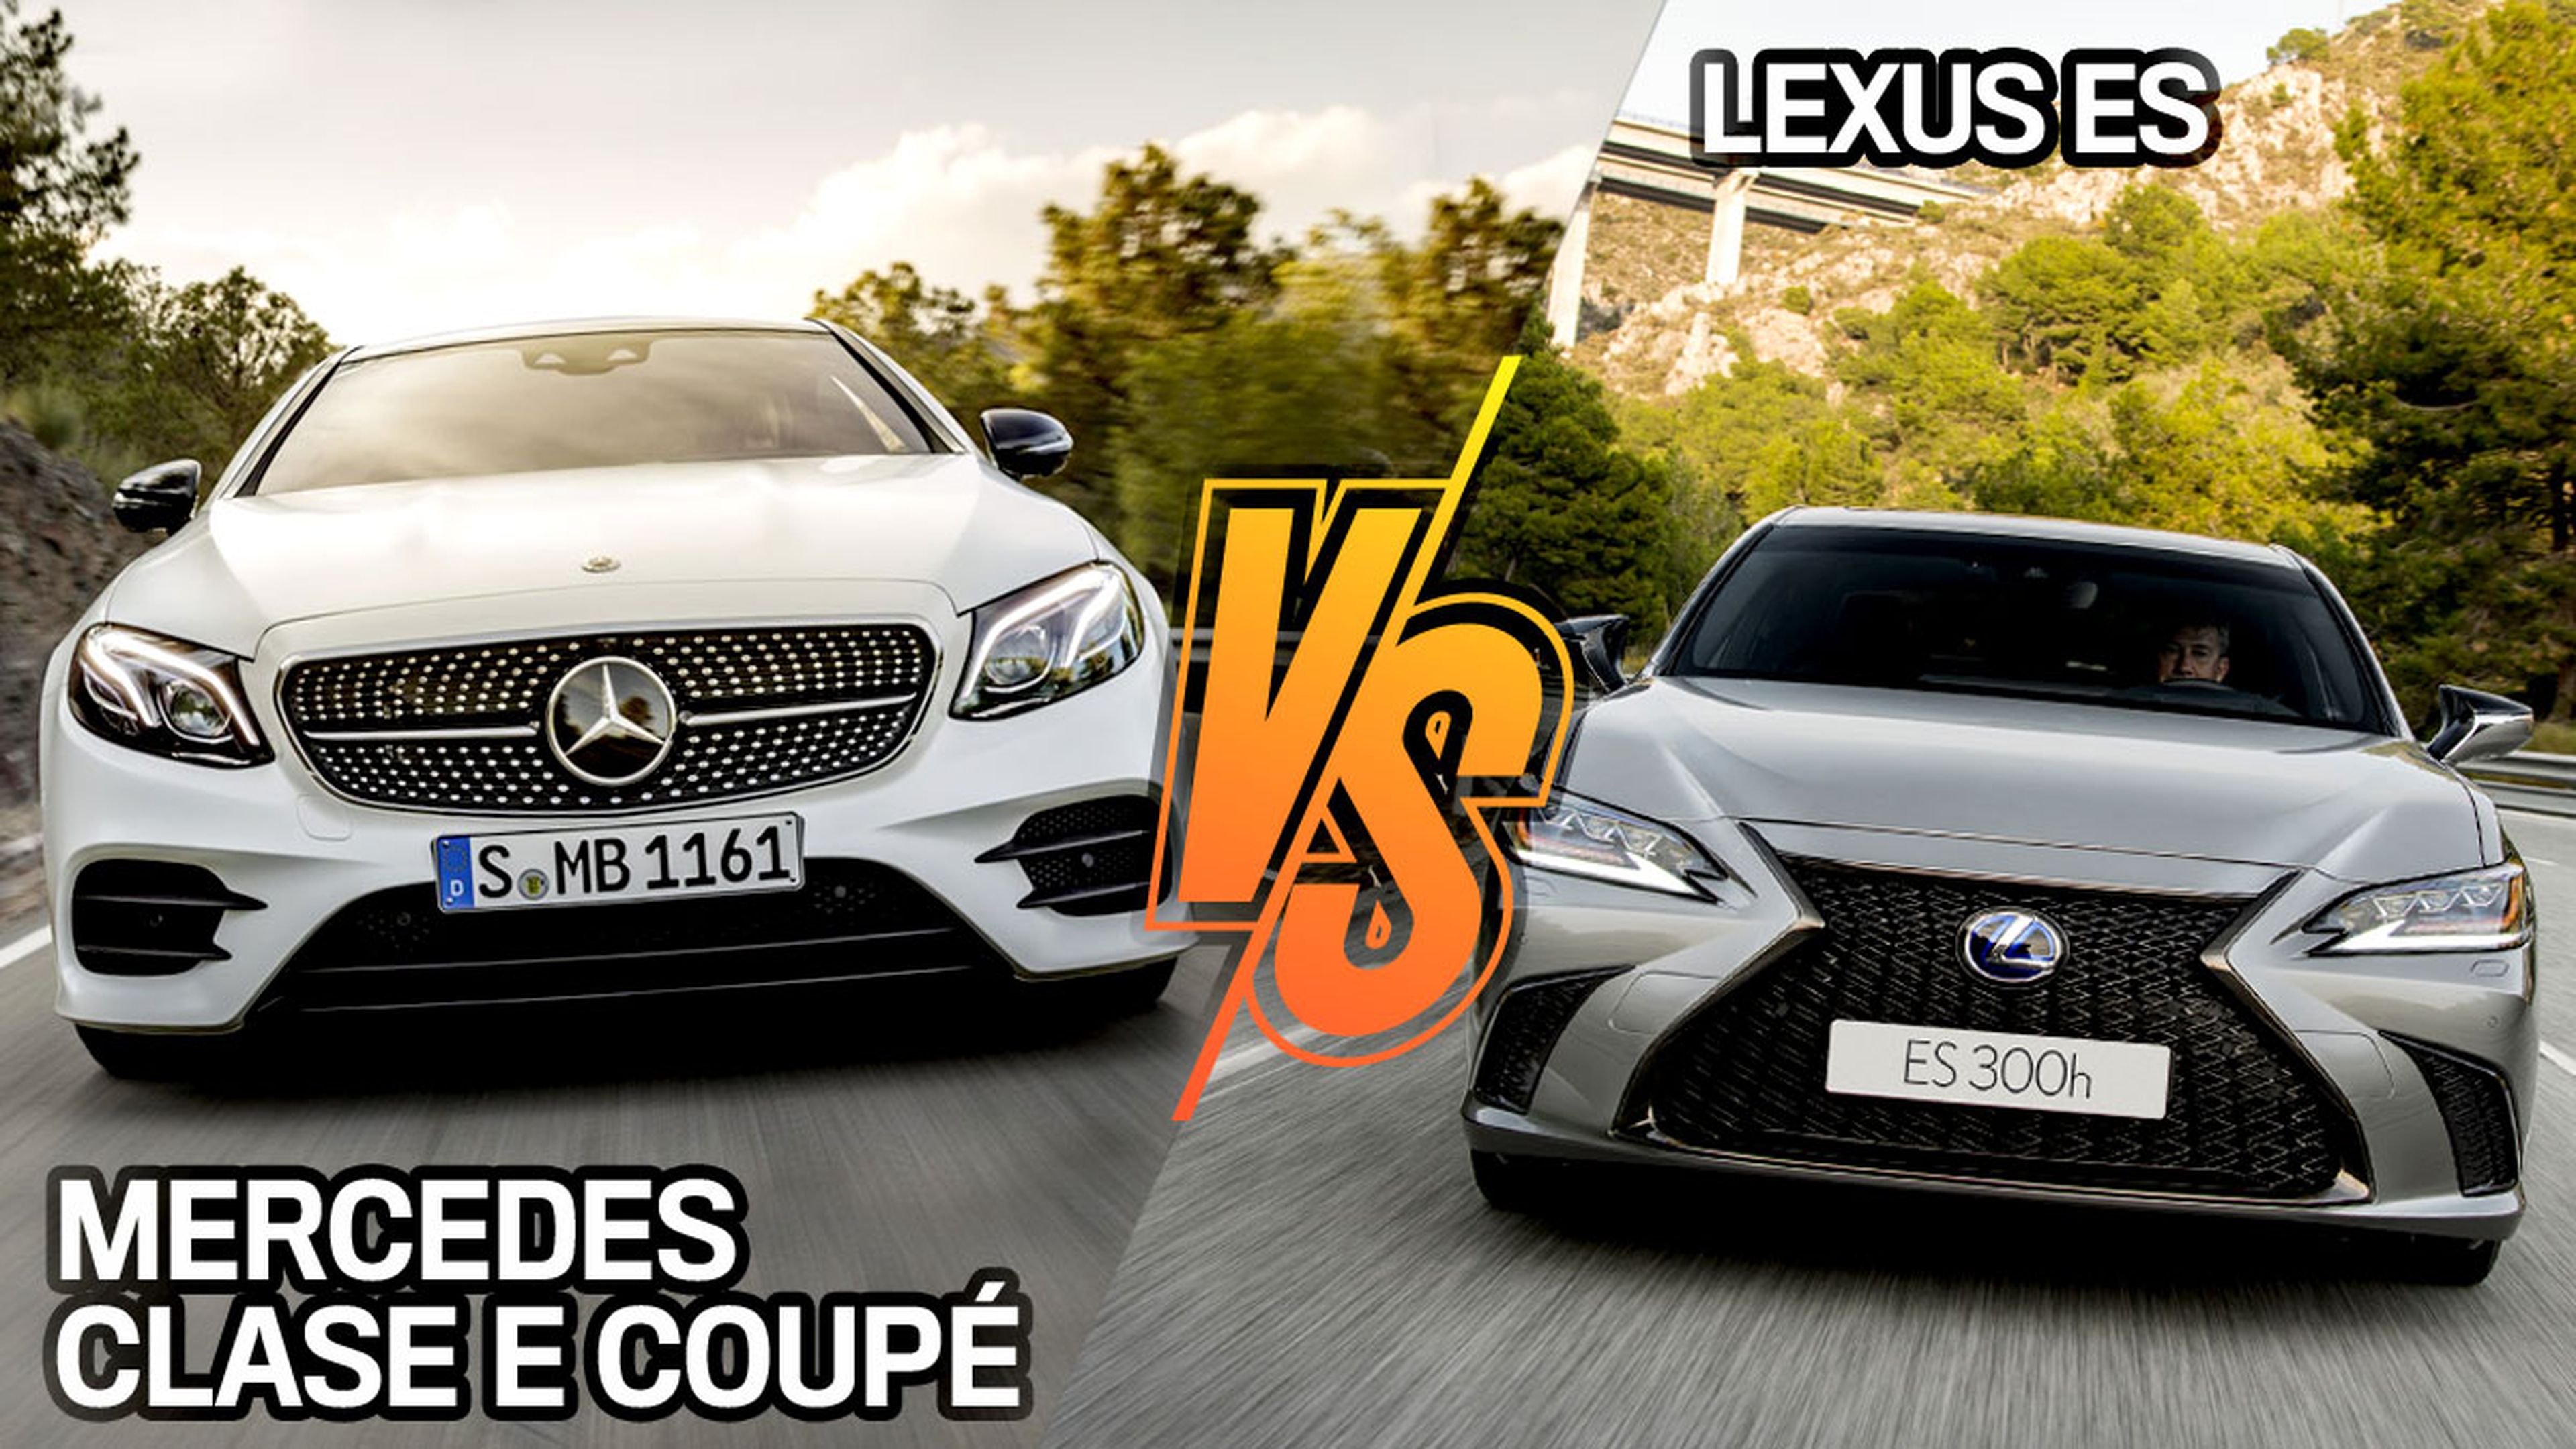 Lexus ES vs Mercedes Clase E Coupé